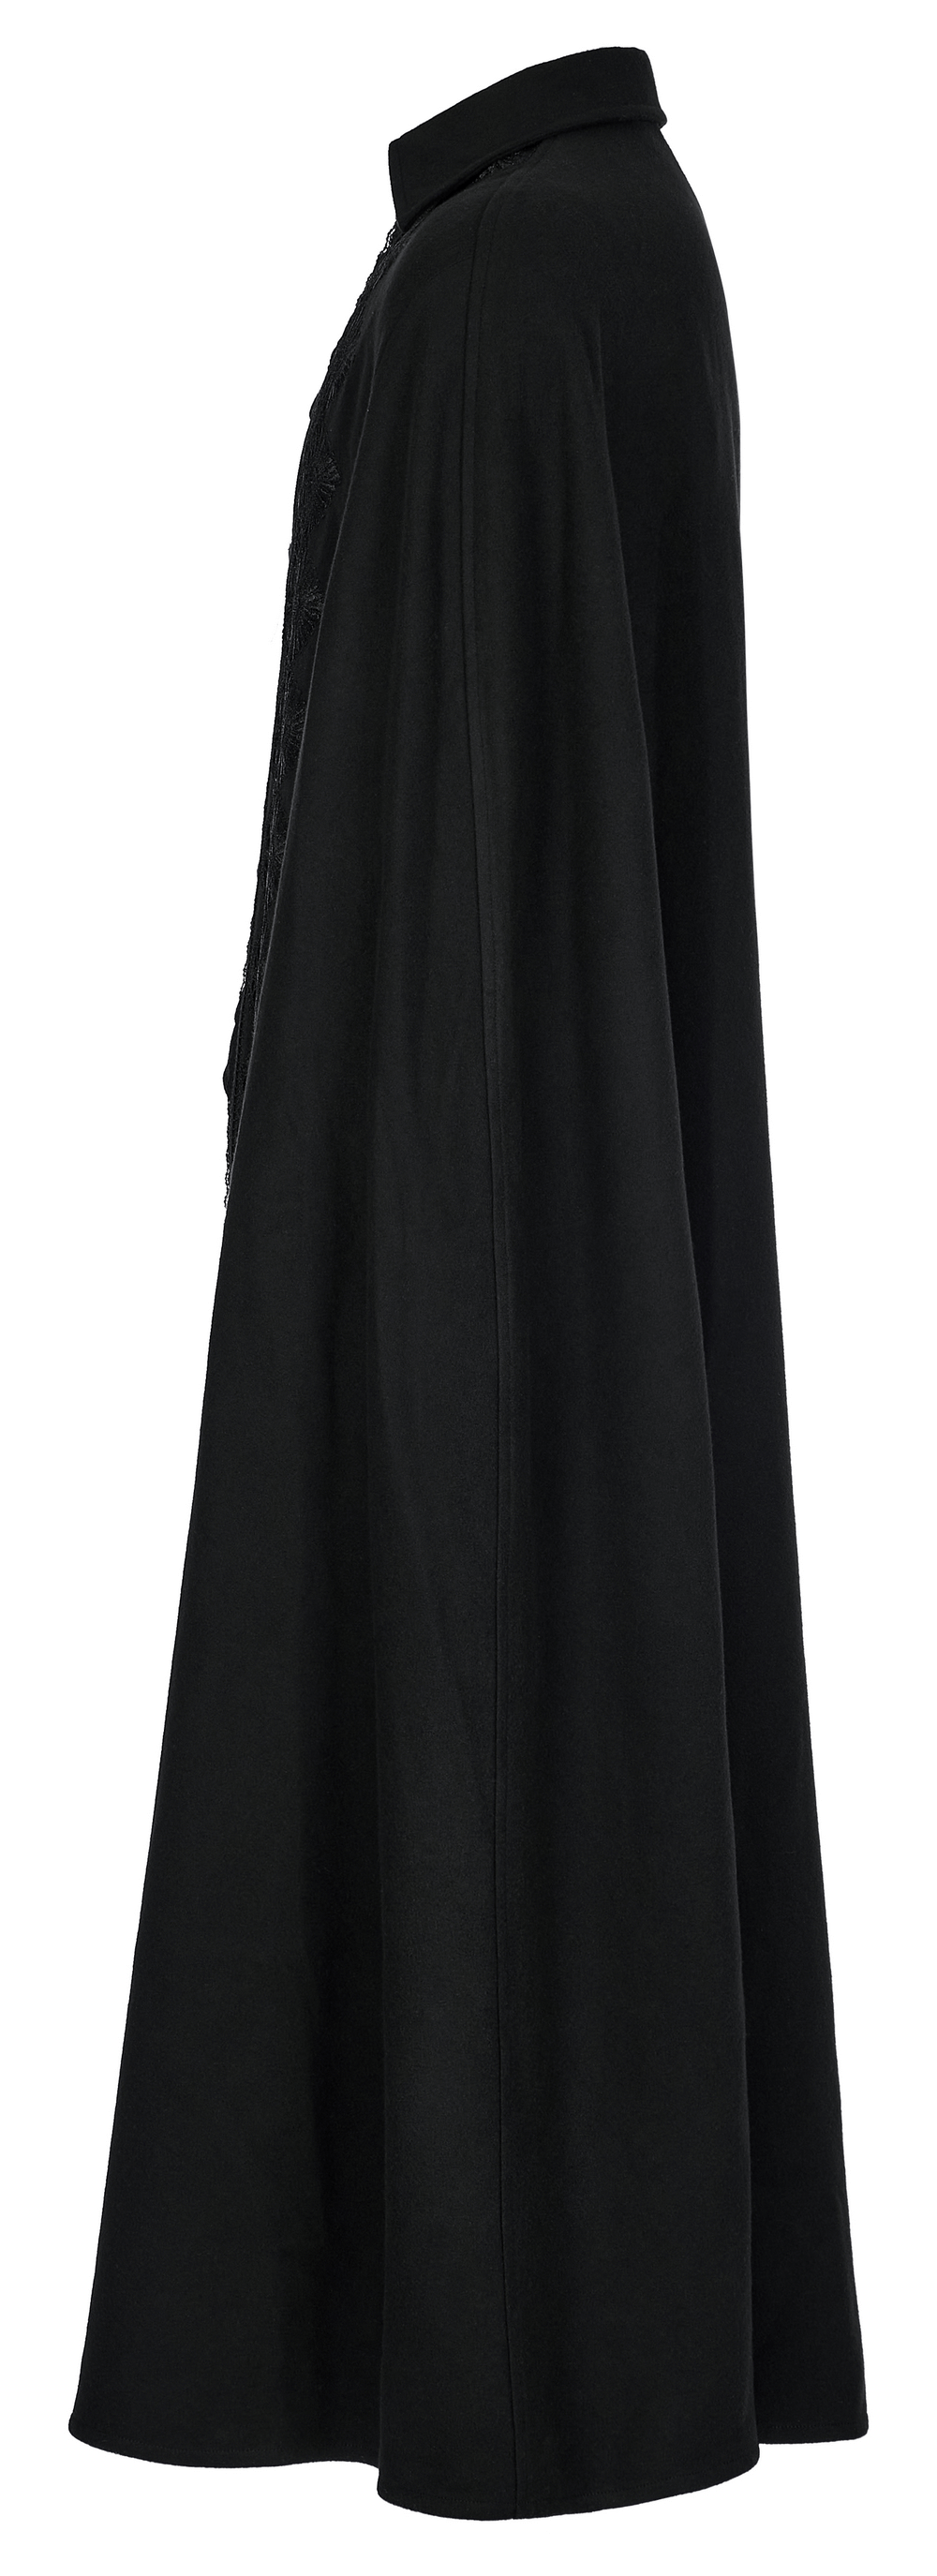 Gothic Elegant Lace-Trimmed Long Cloak for Men - HARD'N'HEAVY